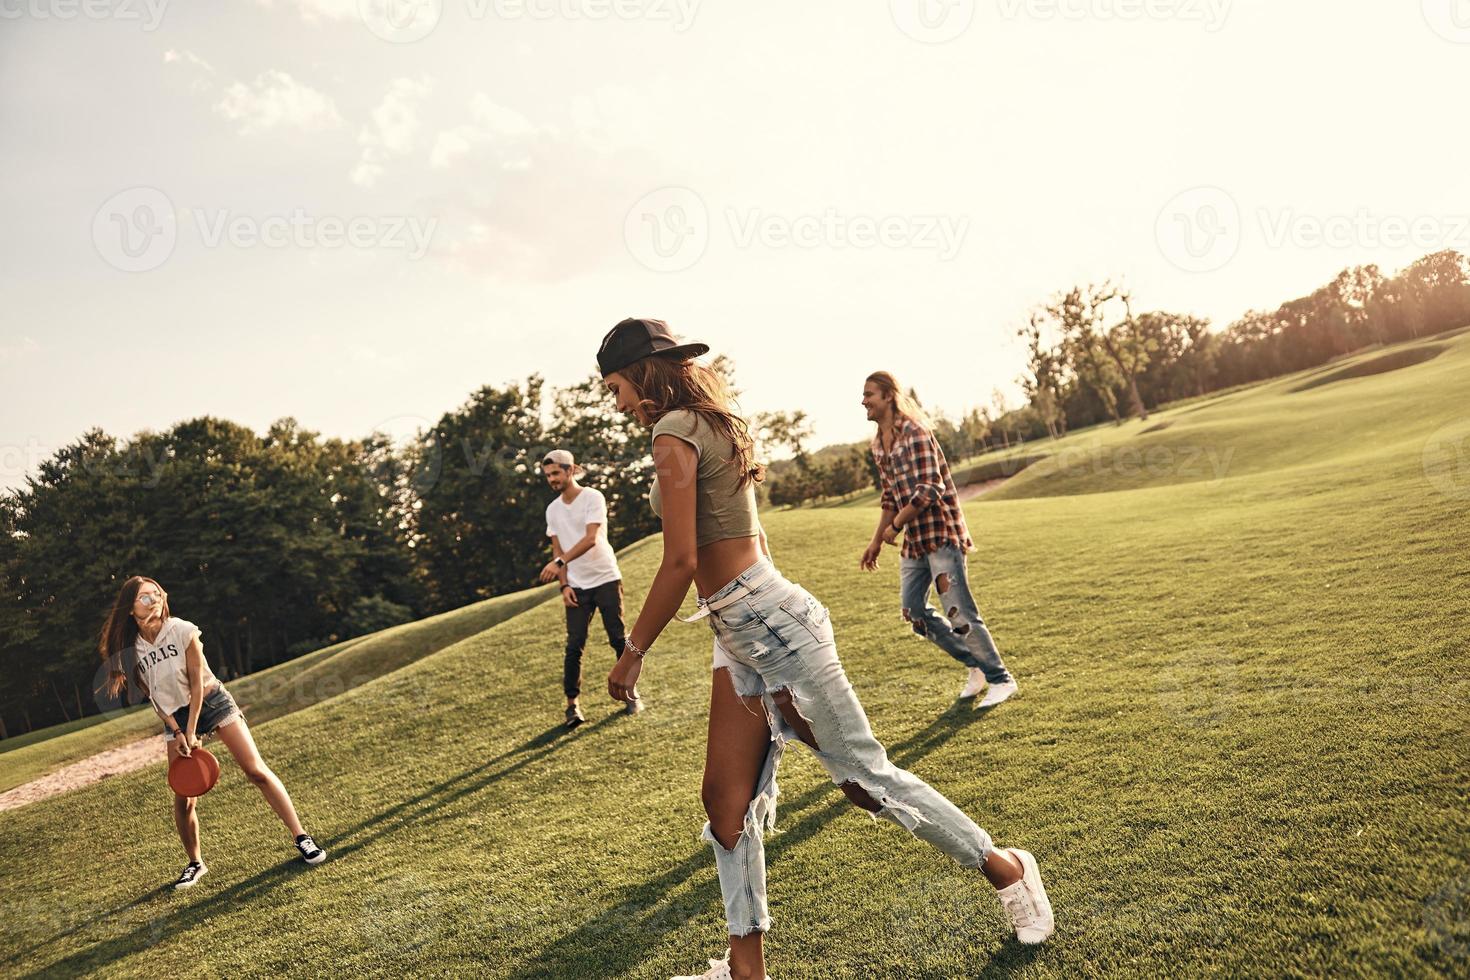 actividad de verano. grupo de jóvenes con ropa informal jugando frisbee mientras pasan tiempo sin preocupaciones al aire libre foto